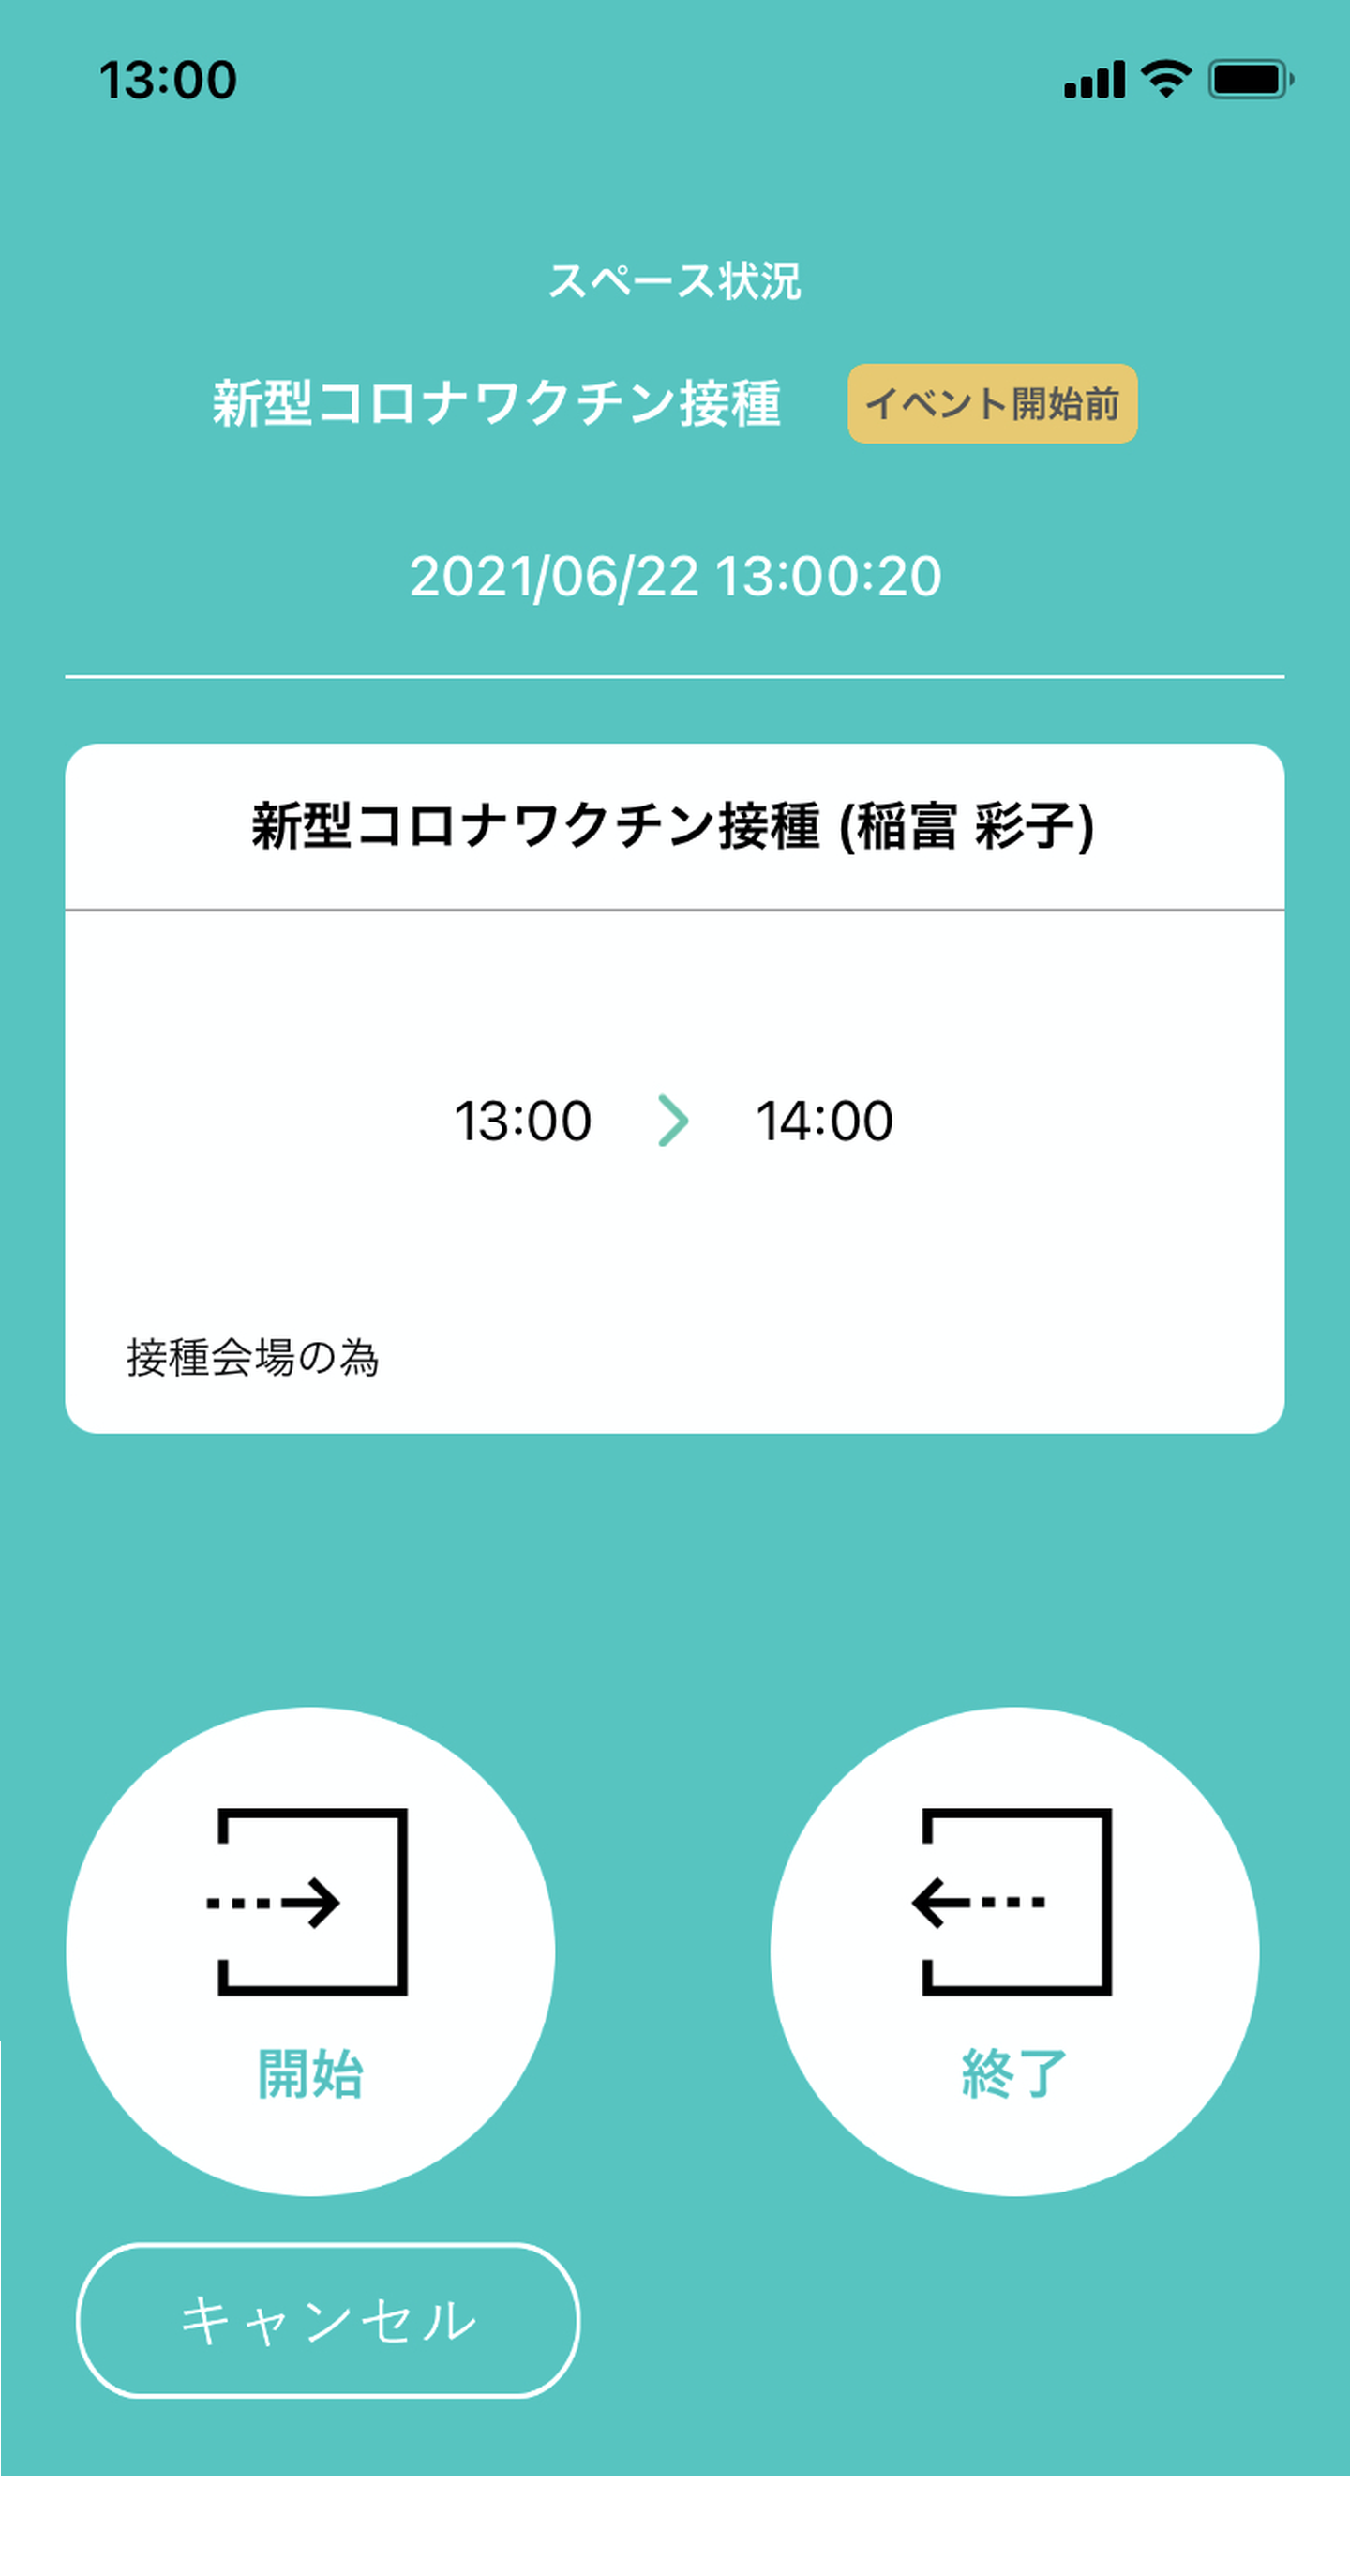 Mamoru Biz アプリの画面イメージ